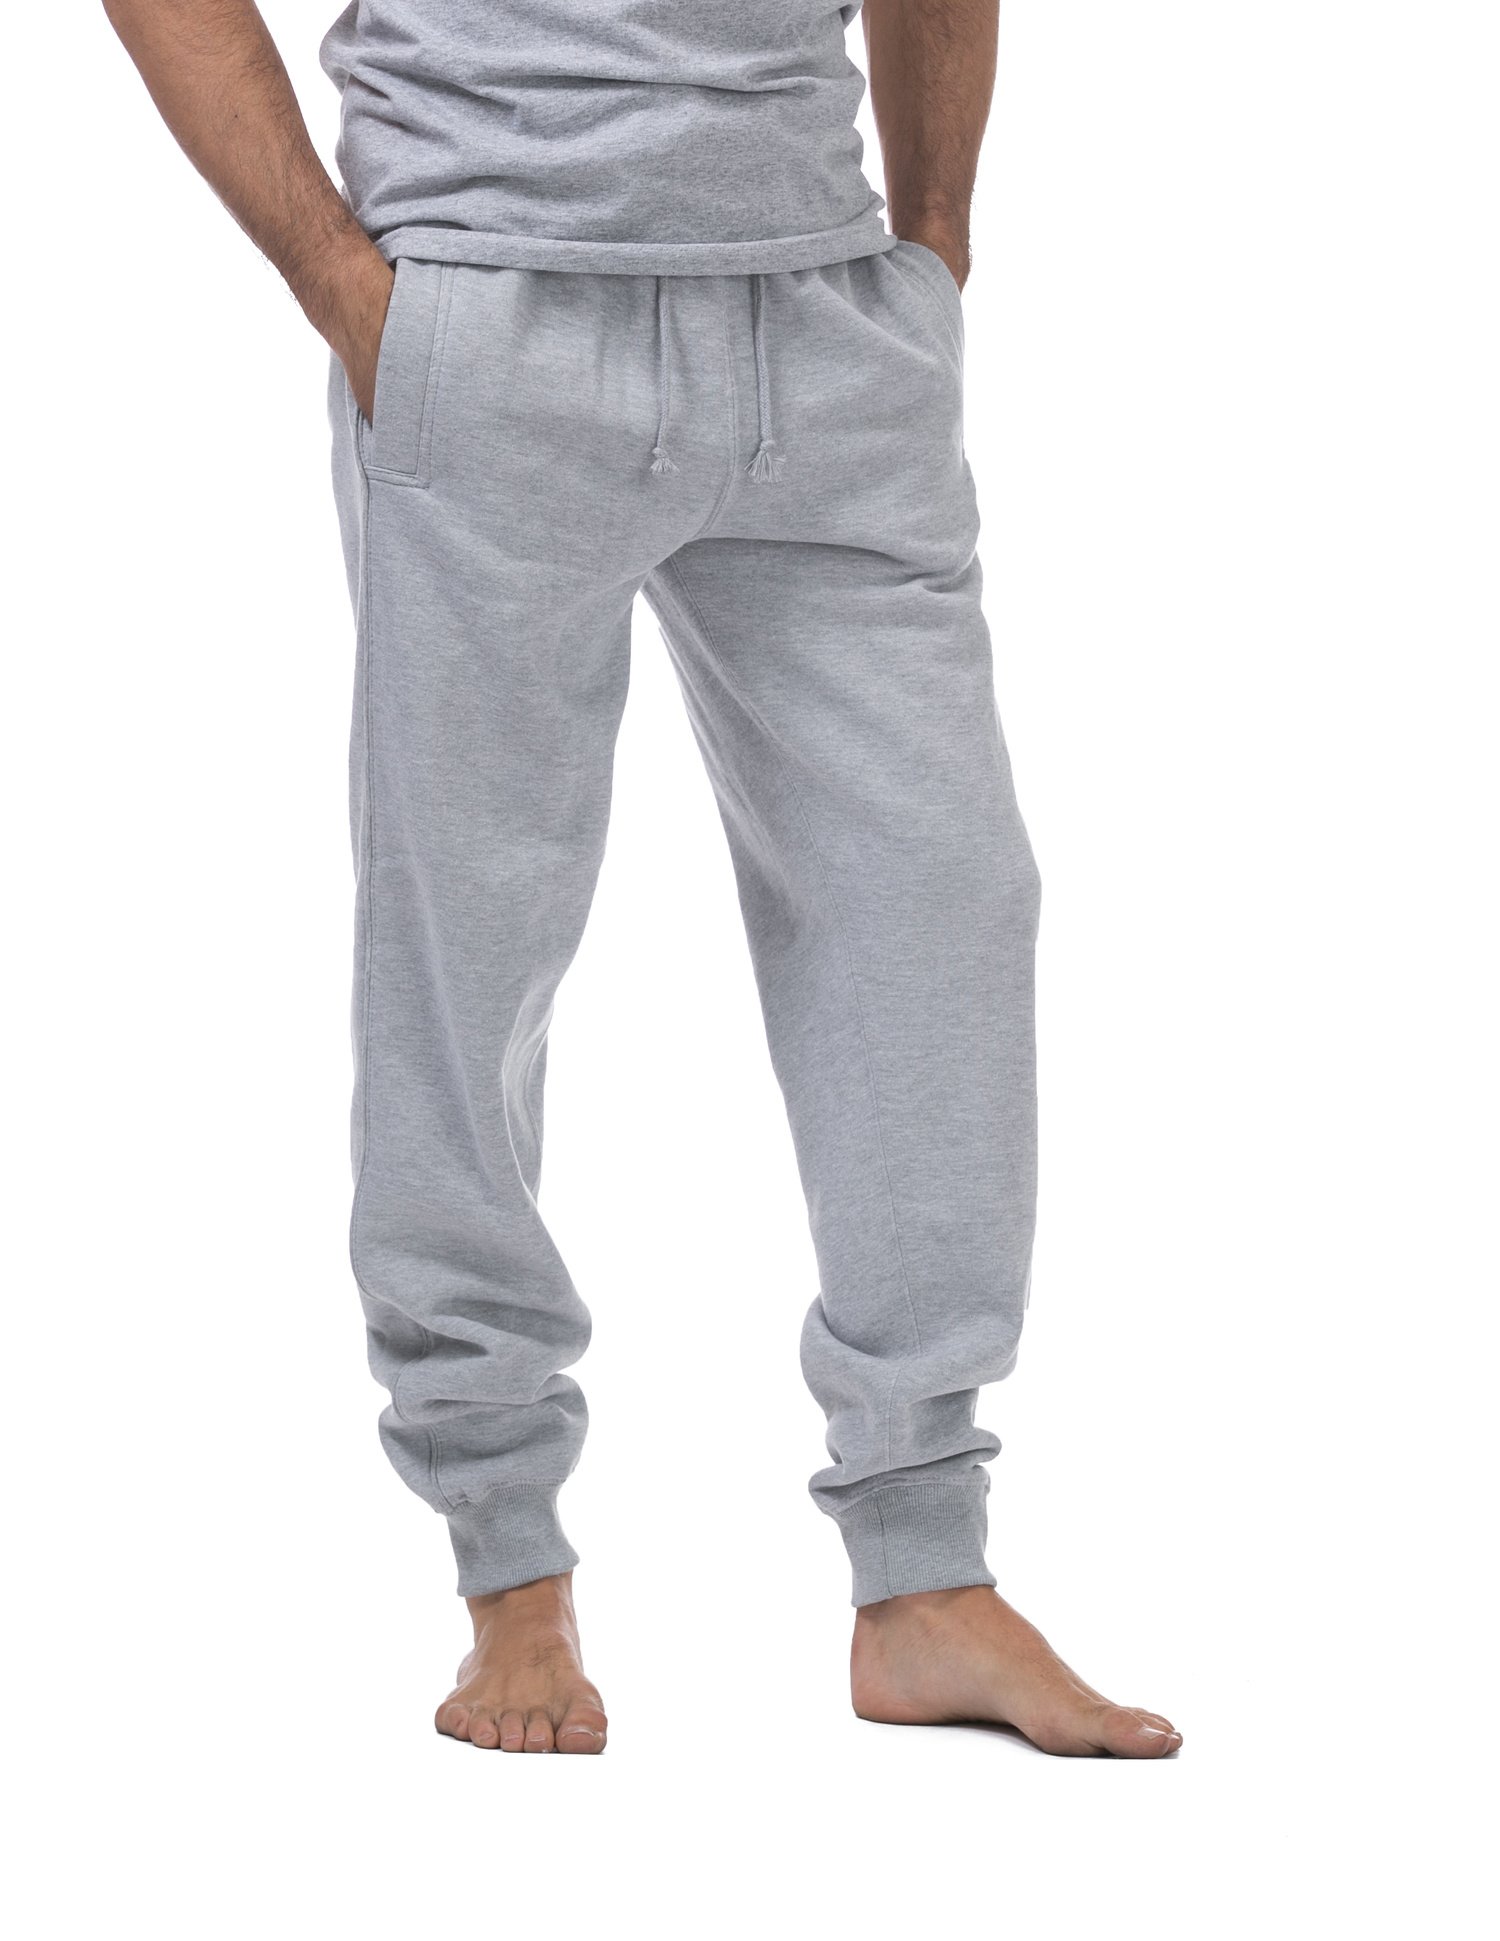 Jogger Fleece Long Pants (Plus Size) - Bottoms-Pants : All Out Co ...